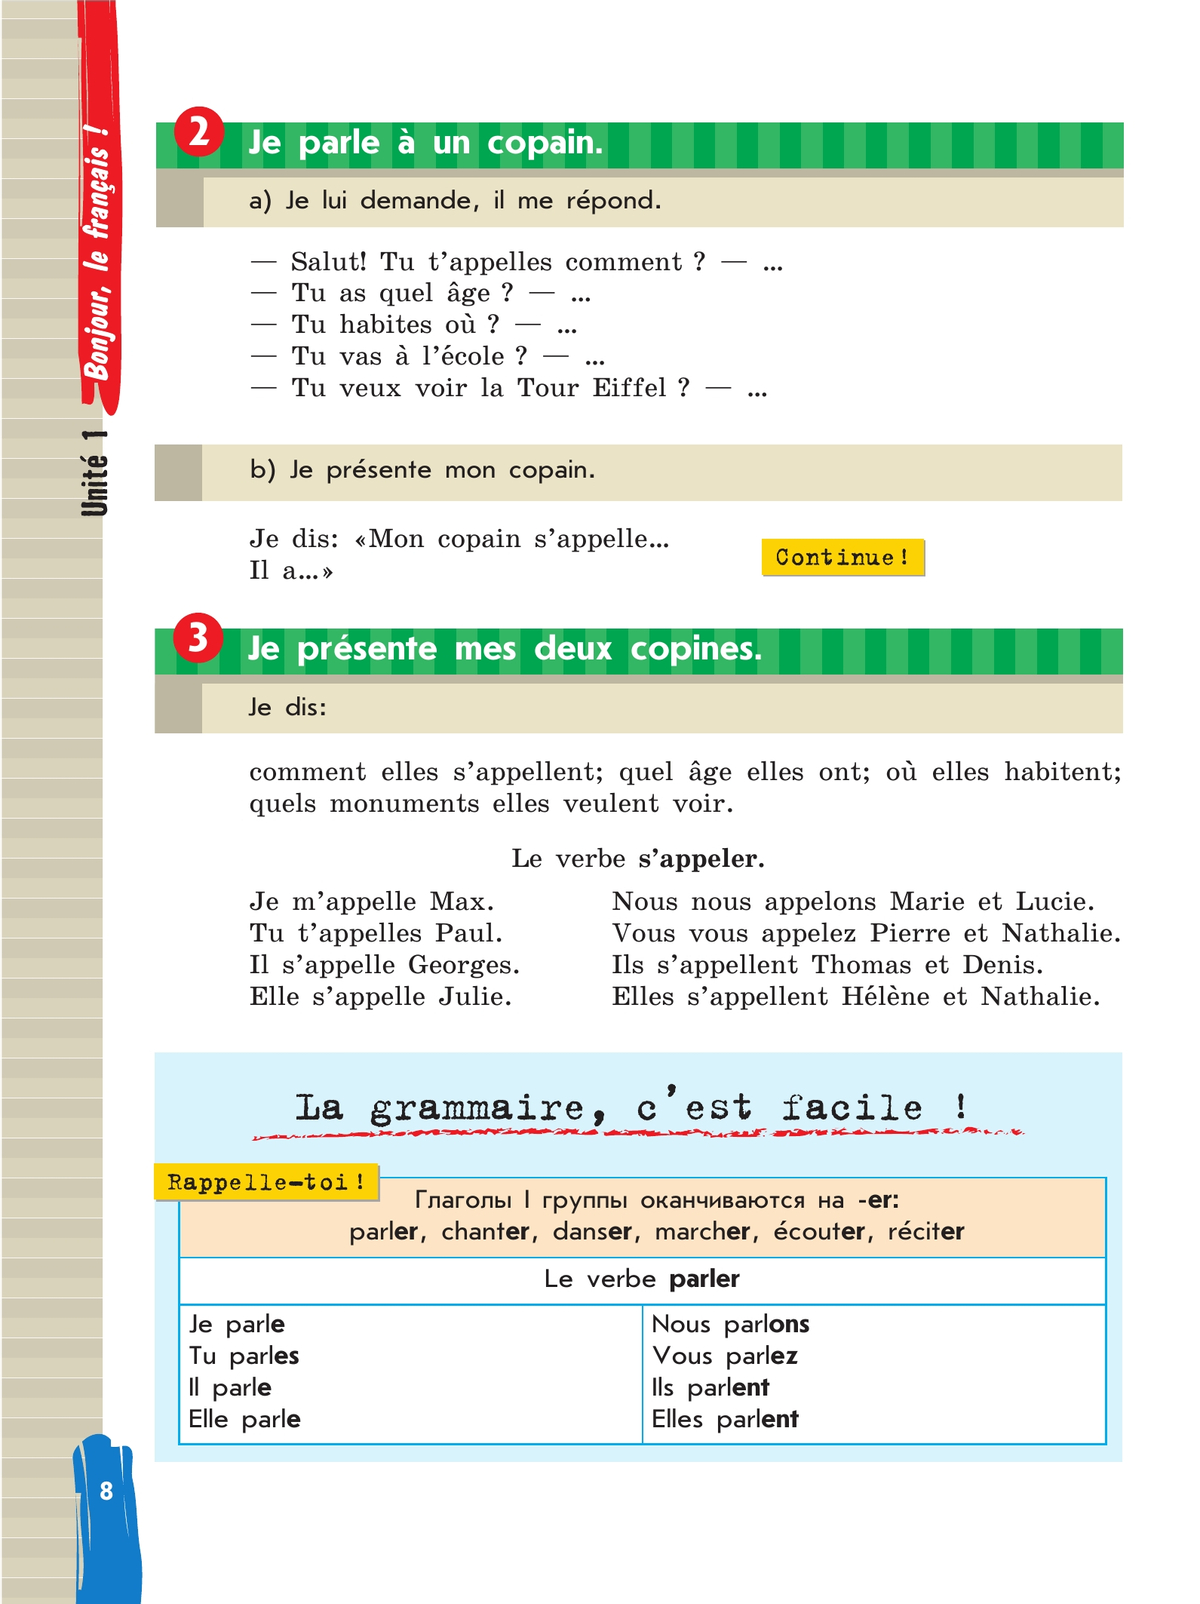 Французский язык. Второй иностранный язык. 5 класс. Учебник. В 2 ч. Часть 1 9